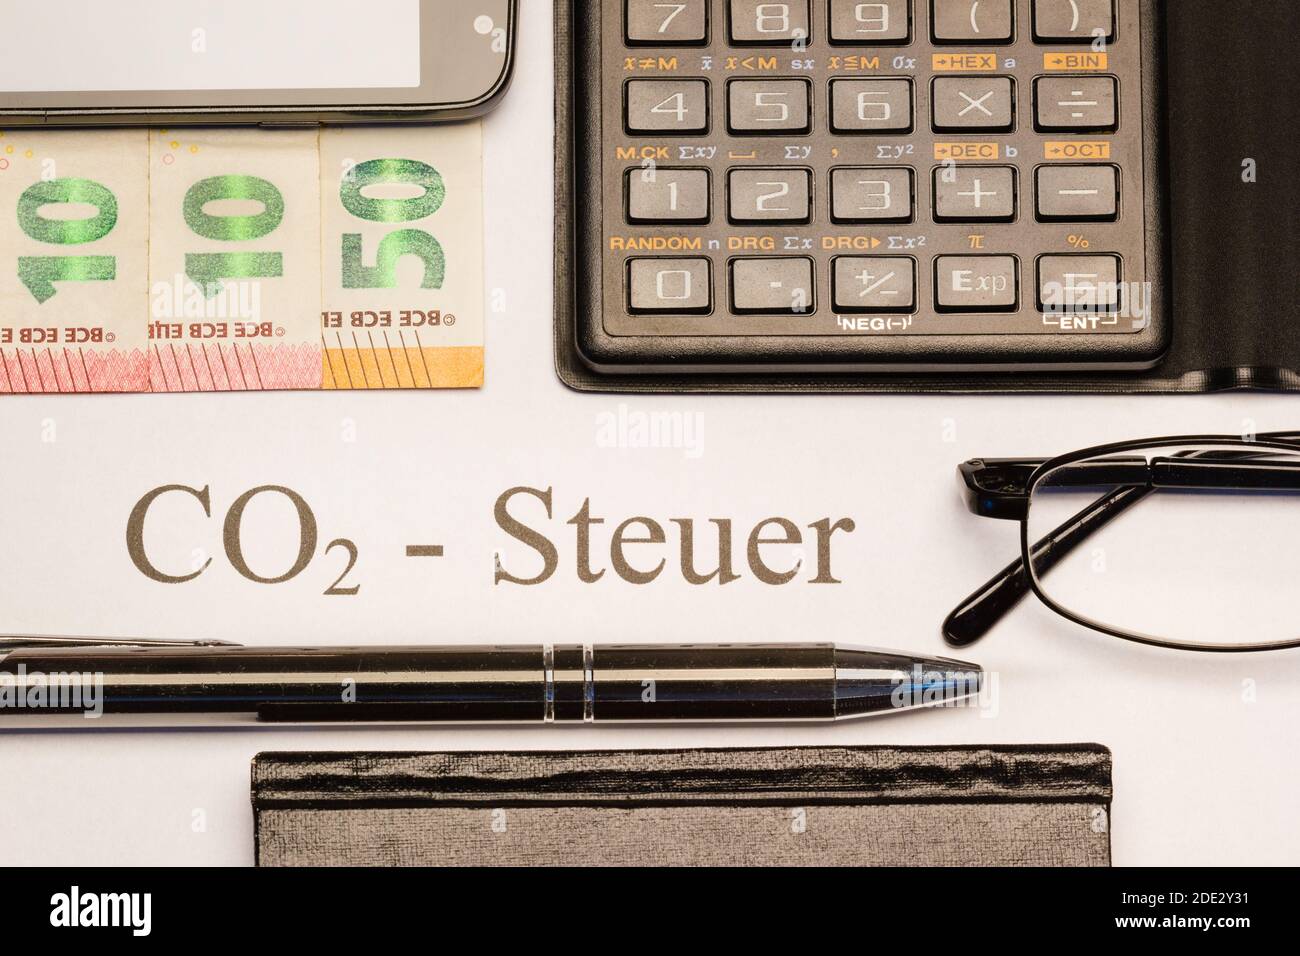 CO2-Steuer gedruckt auf Papier mit Kugelschreiber, Geldscheinen, Taschenrechner, Notizbuch und Handy Foto de stock